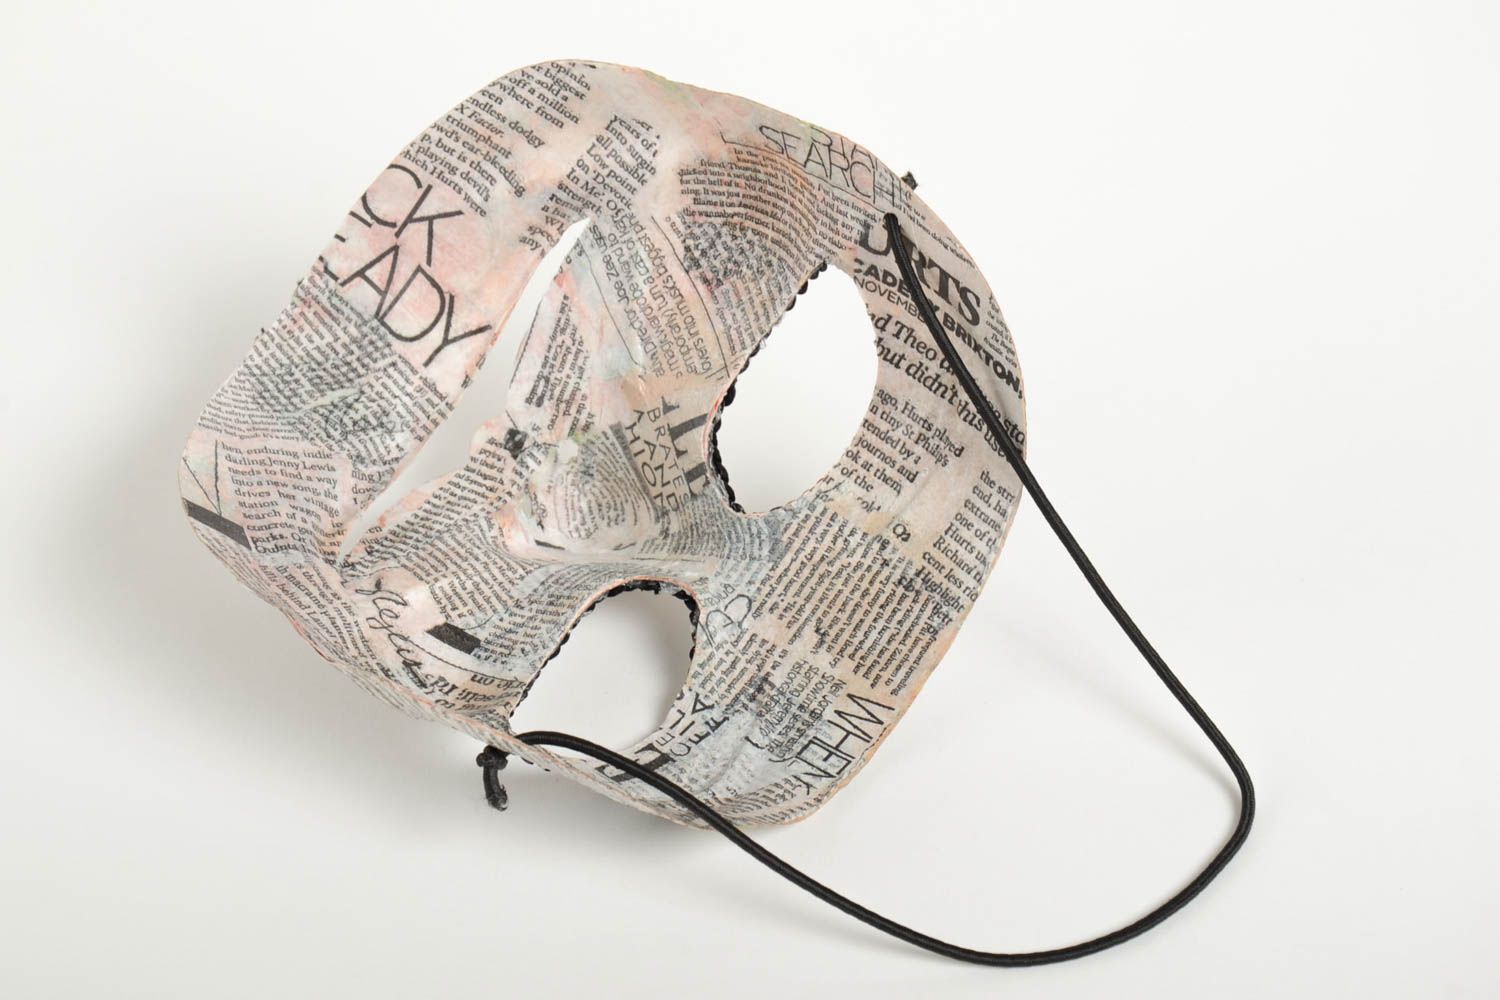 Handmade Pappmache Idee Geschenk für Mann venezianische Maske festlich grell foto 3